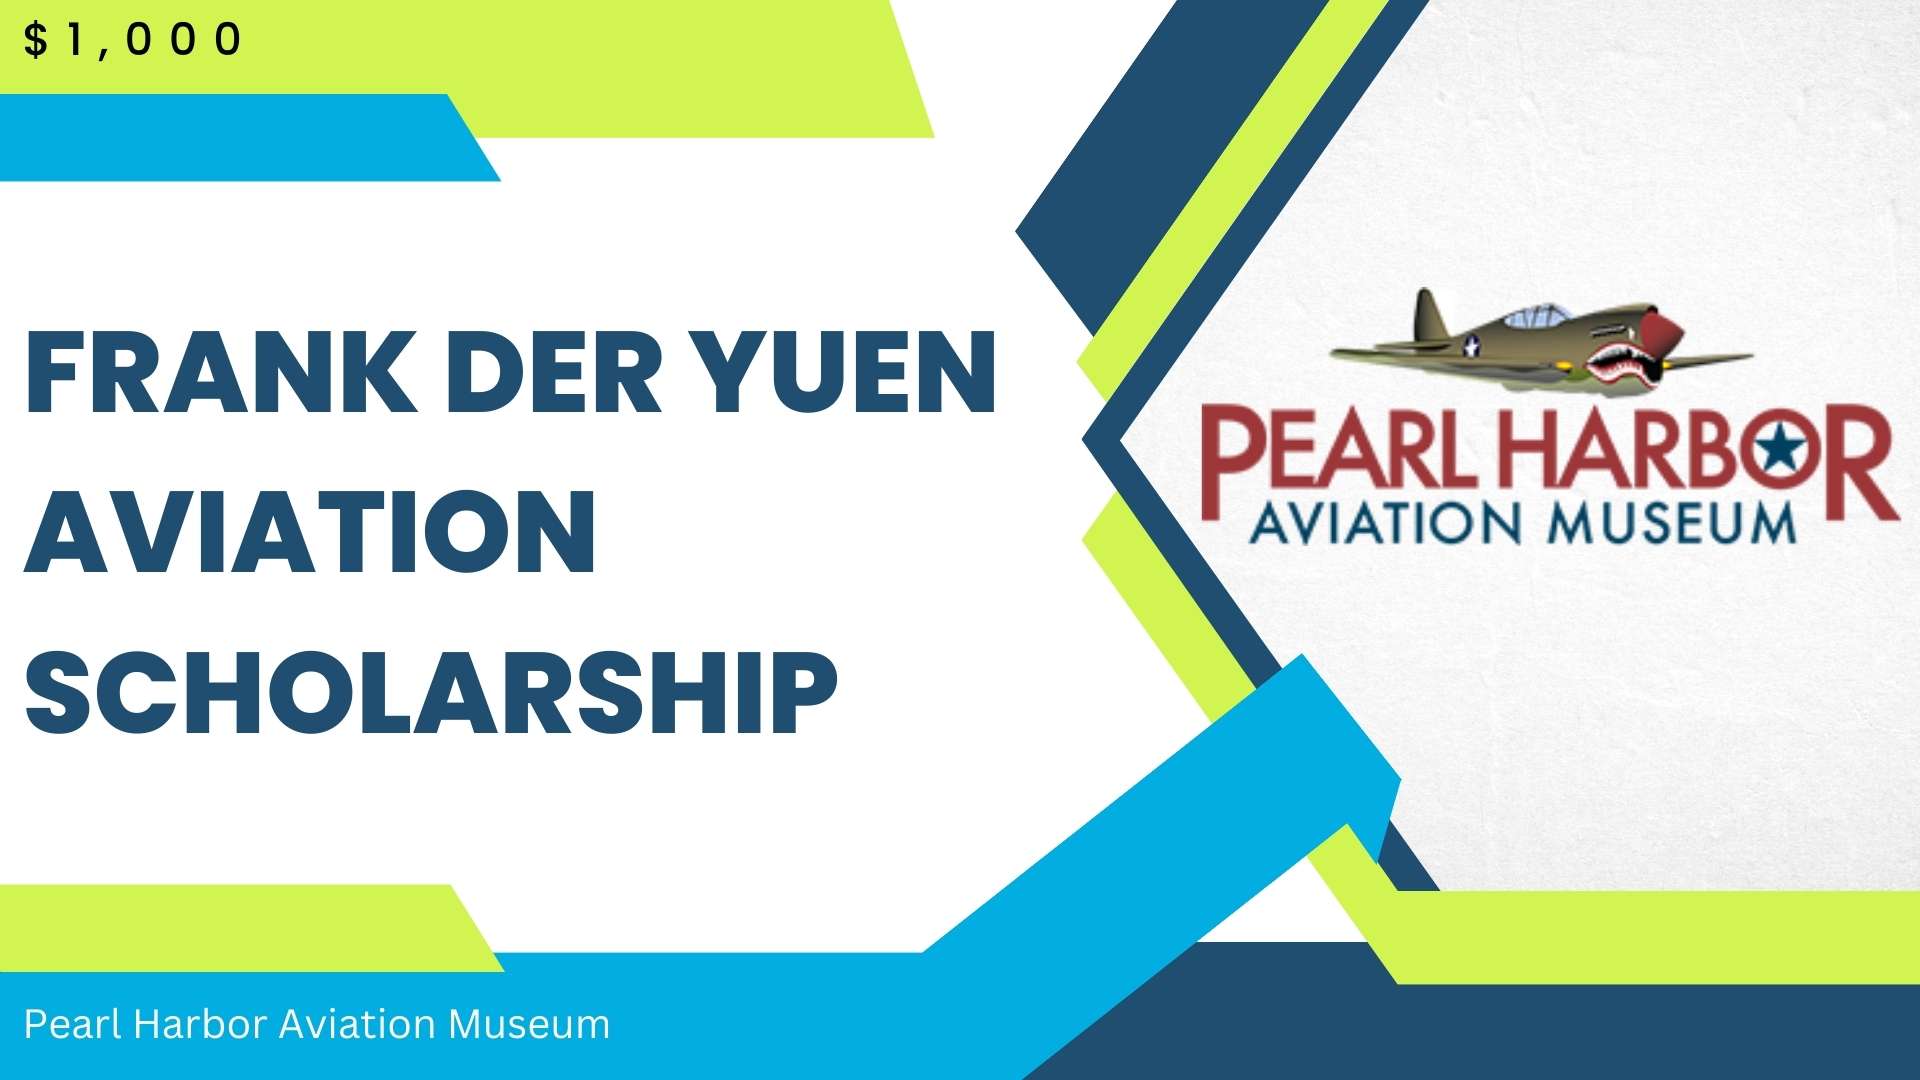 Frank Der Yuen Aviation Scholarship